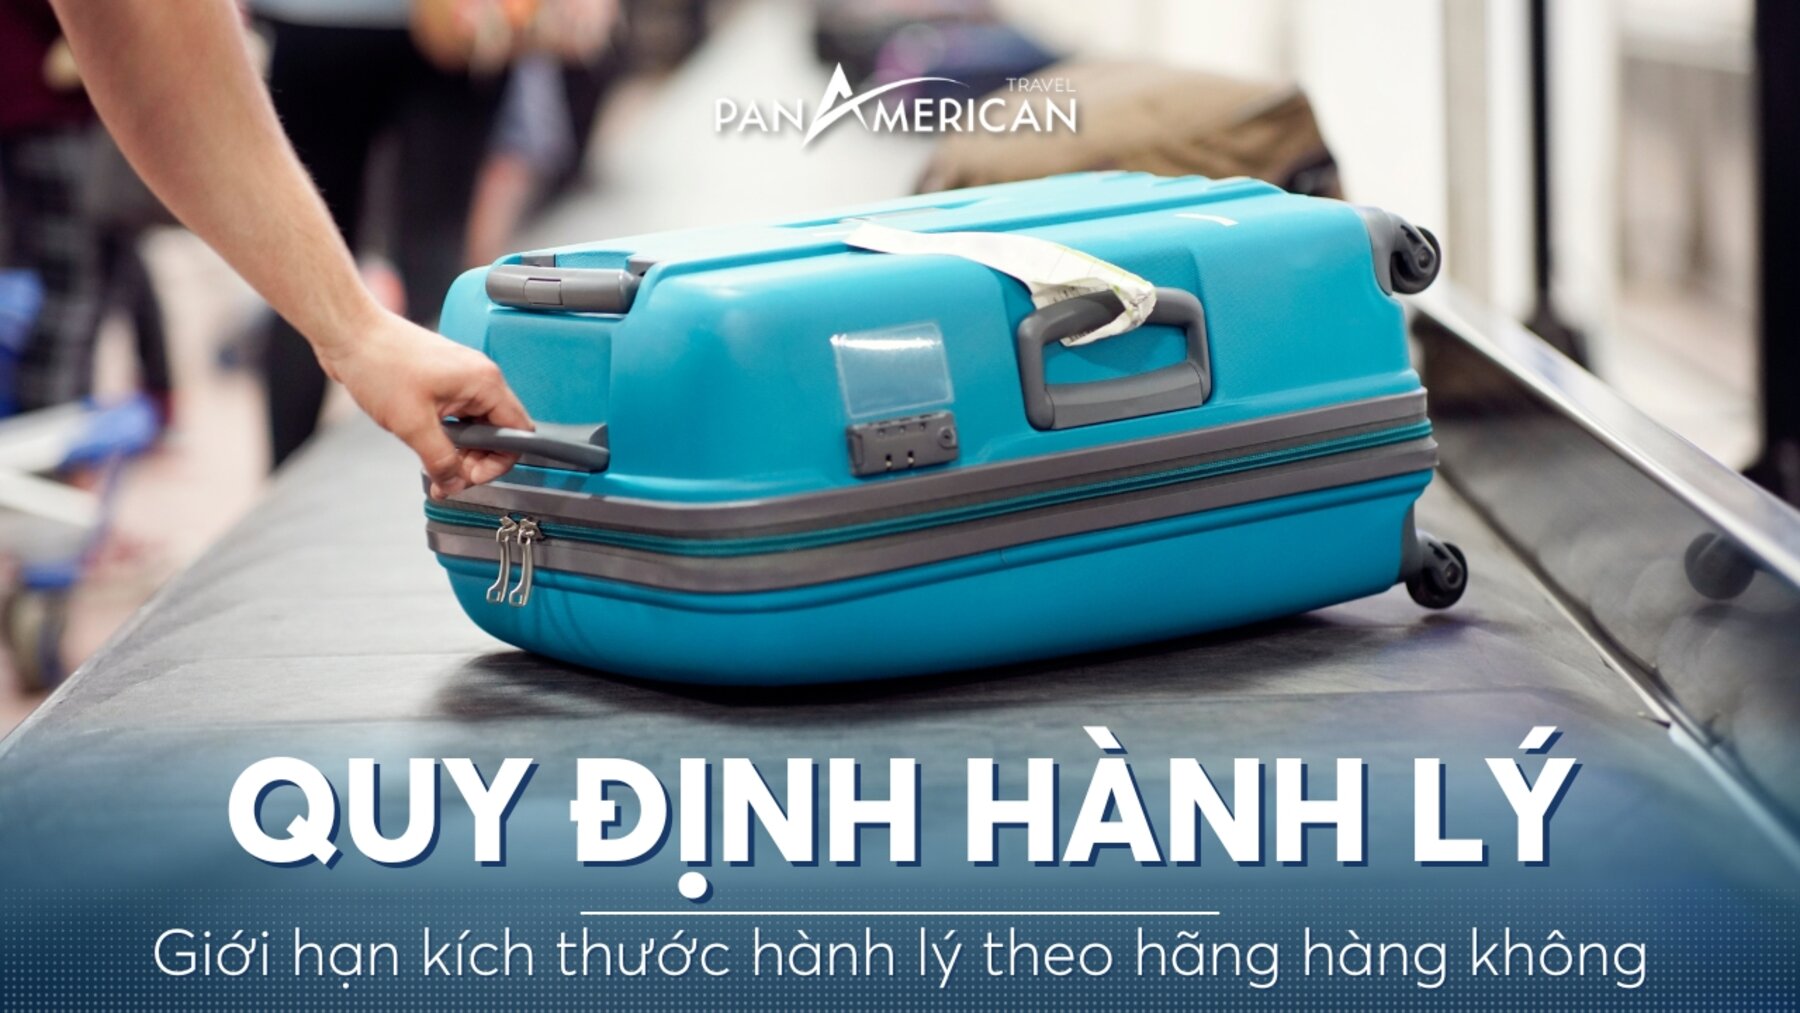 Quy định về giới hạn kích thước hành lý theo hãng hàng không